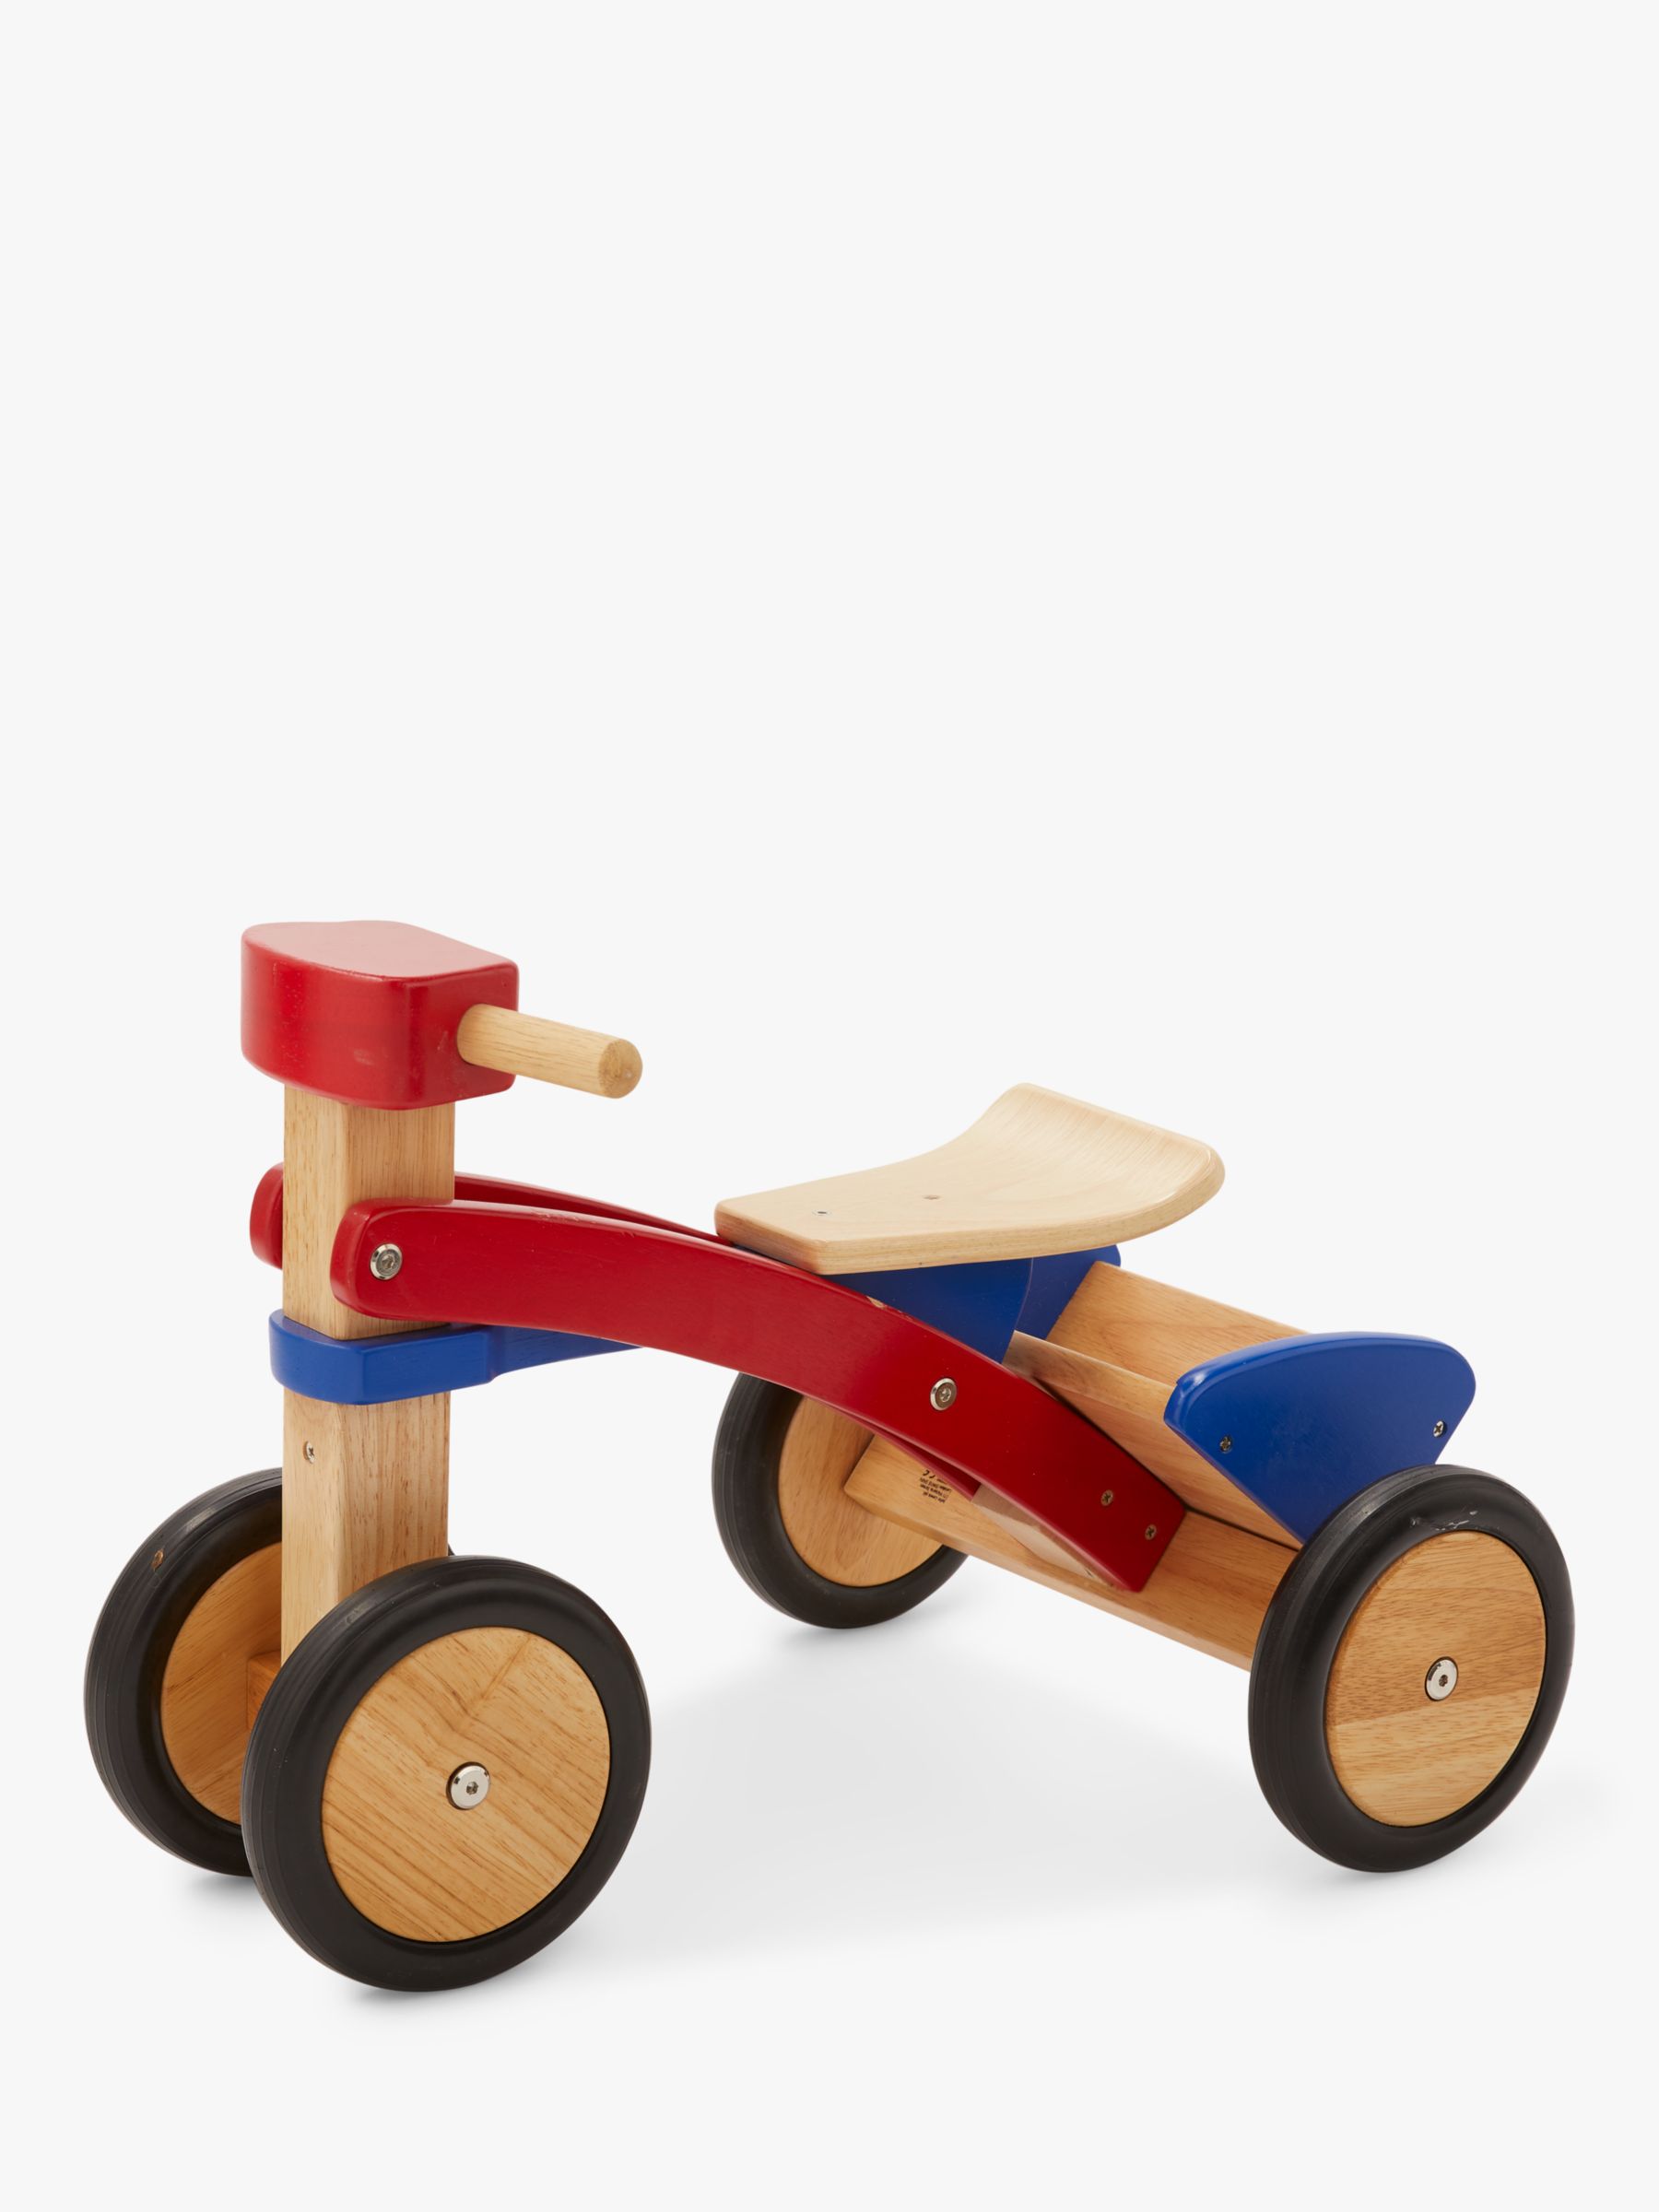 childs wooden trike